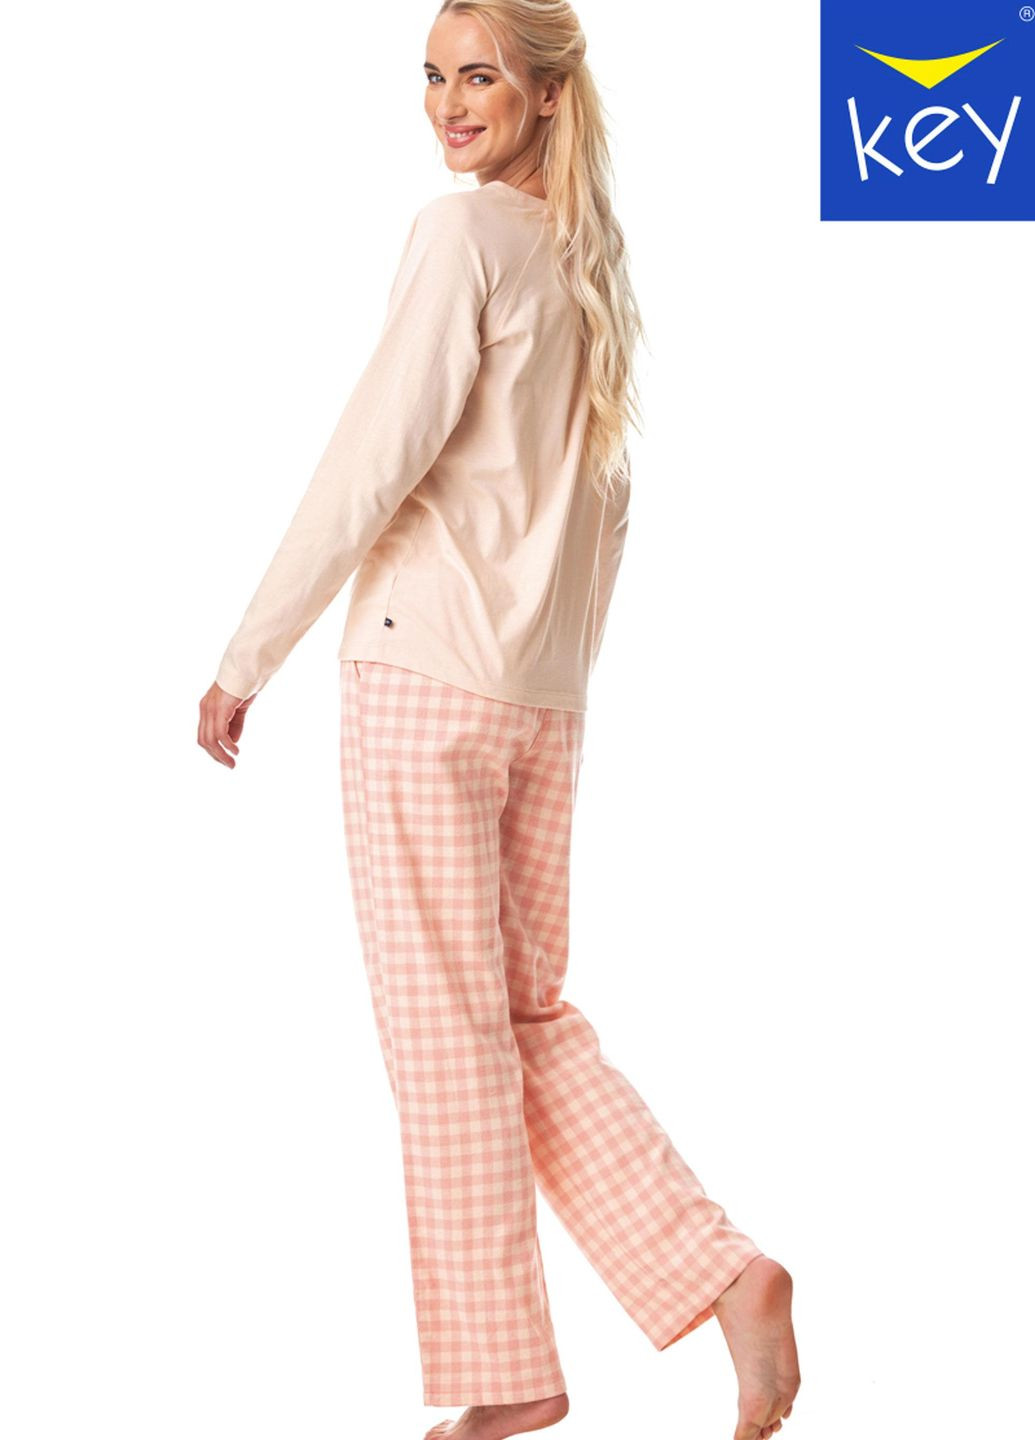 Розовая пижама женская xl mix принт lns 447 b23 Key